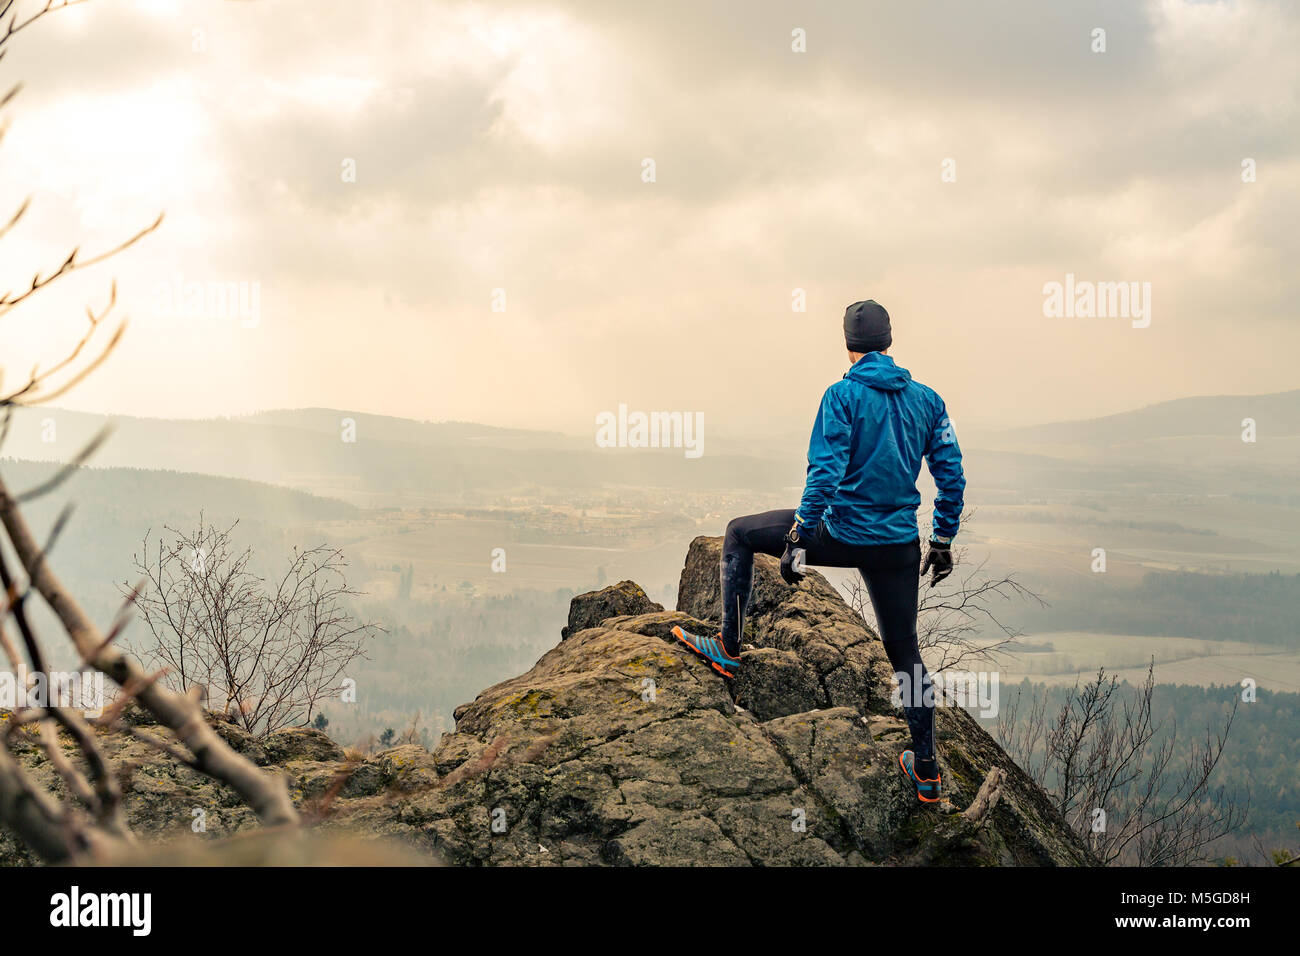 Mann in schönen inspirierenden Berge Sonnenaufgang beten oder feiern. Wanderer-Silhouette auf Berggipfel Wandern oder klettern. Auf der Suche und genießen inspira Stockfoto